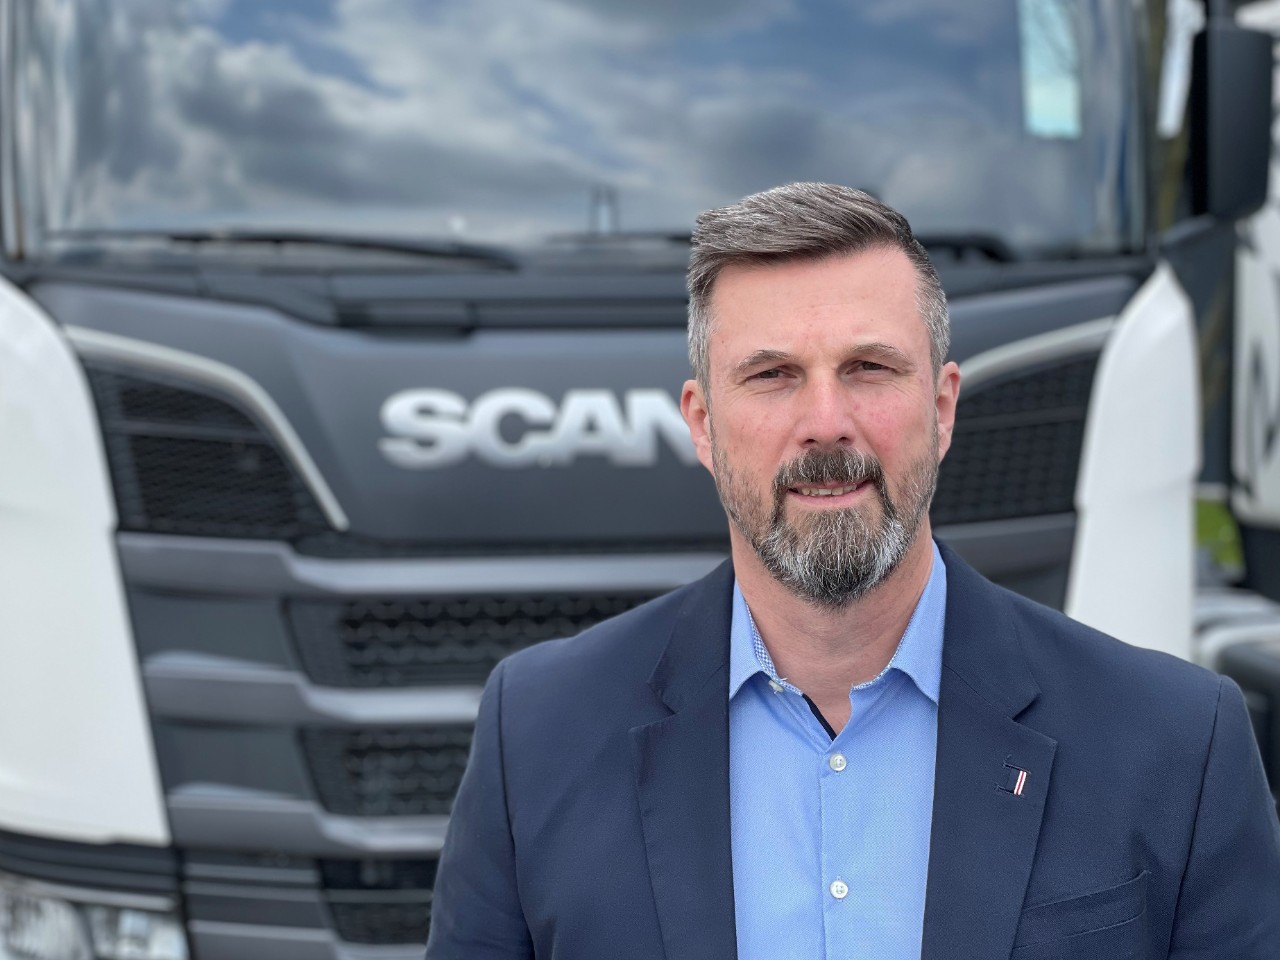 Obchod společnosti Scania CER povede od 1. července Marian Mráz. Střídá Martina Plachého 